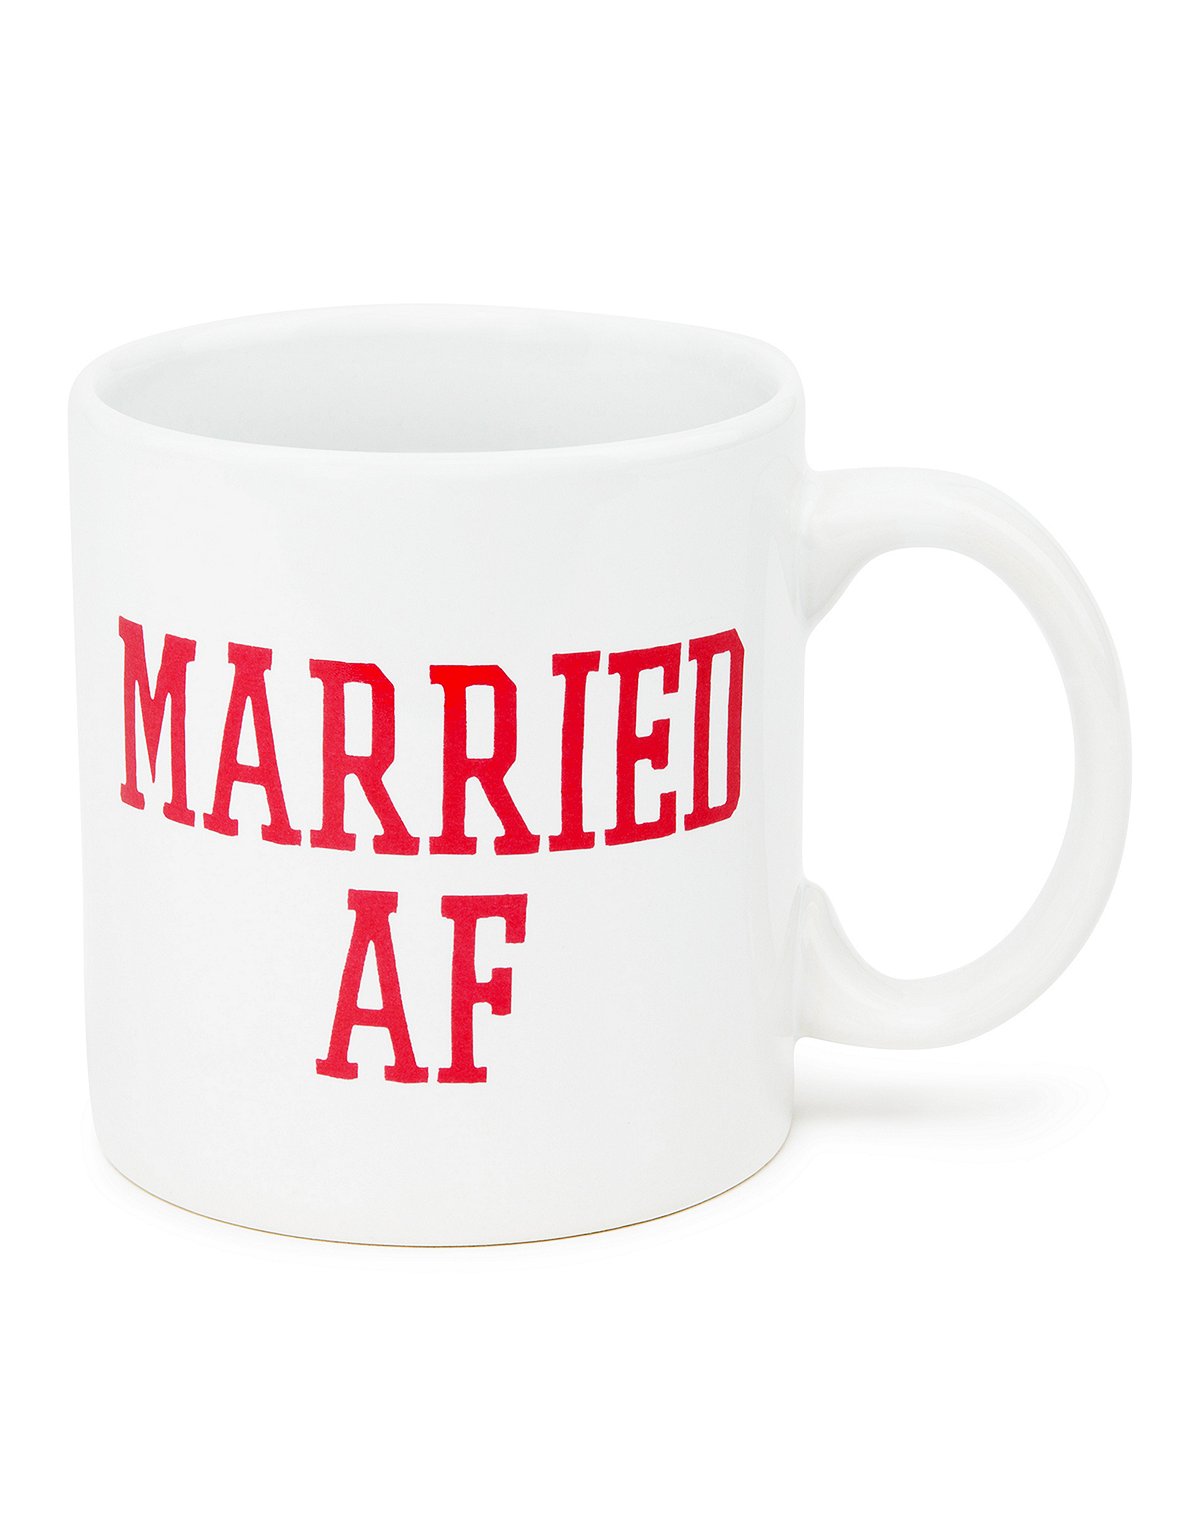 married af coffee mug